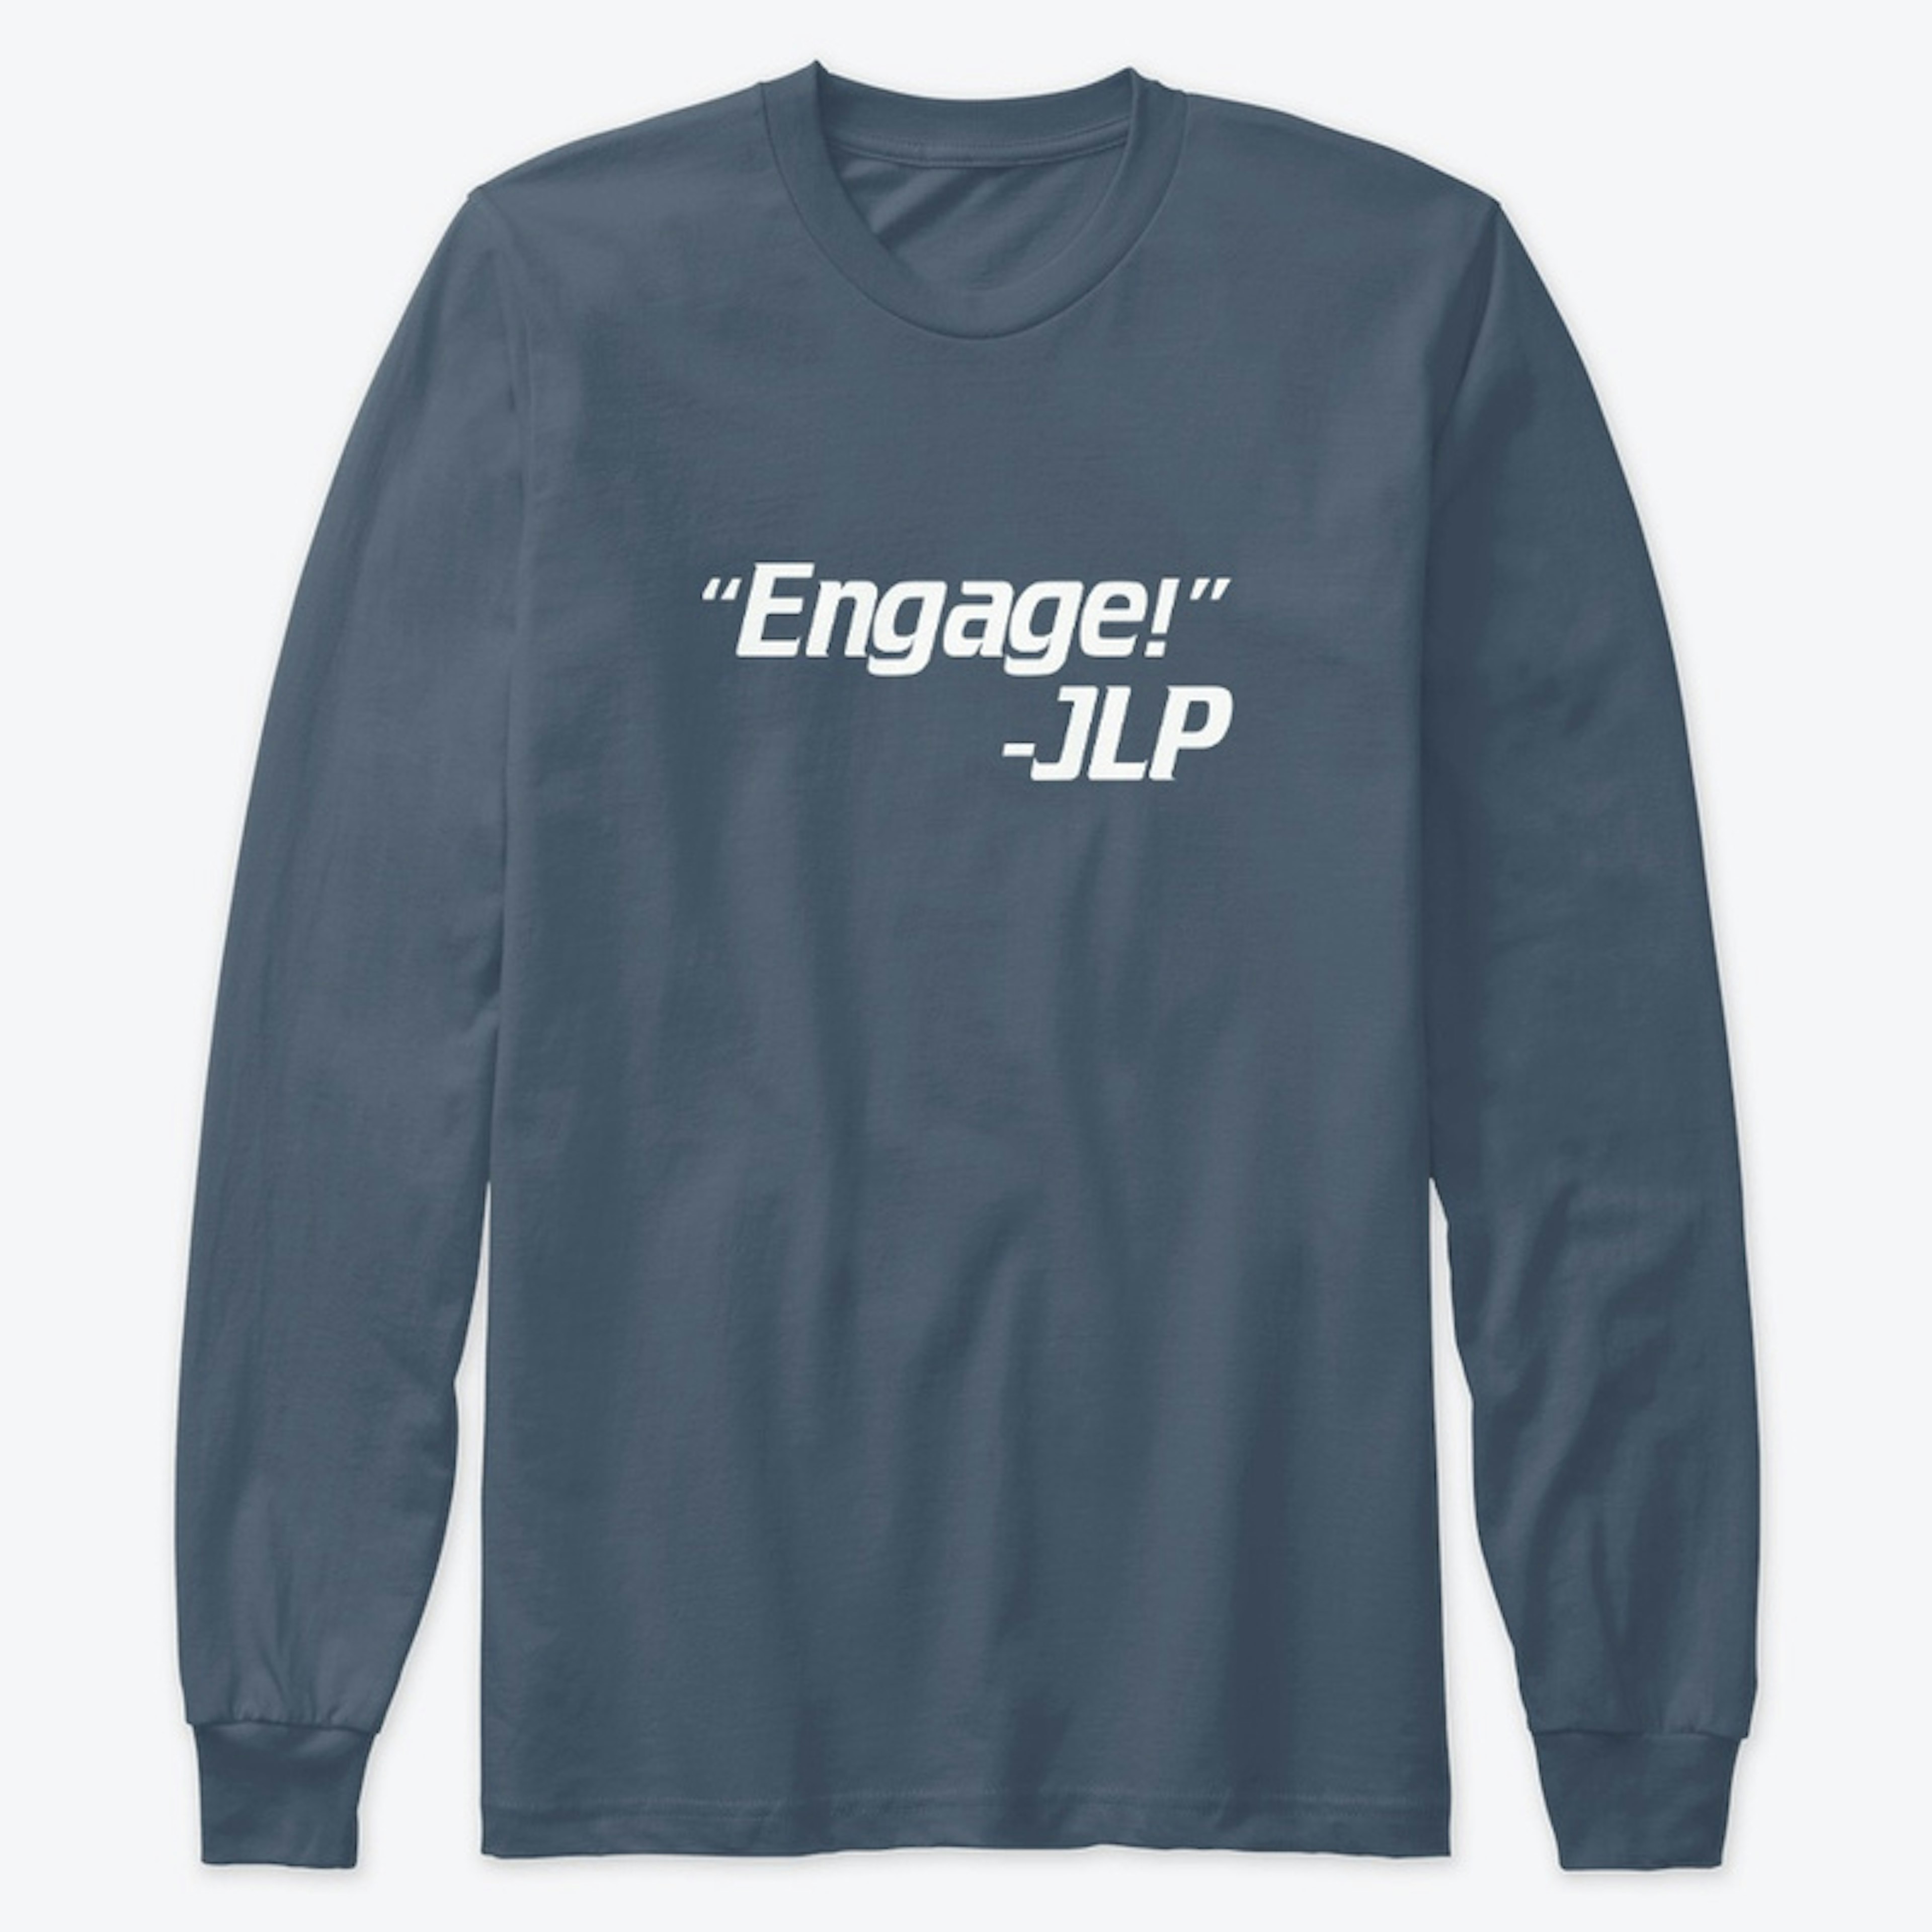 Engage!